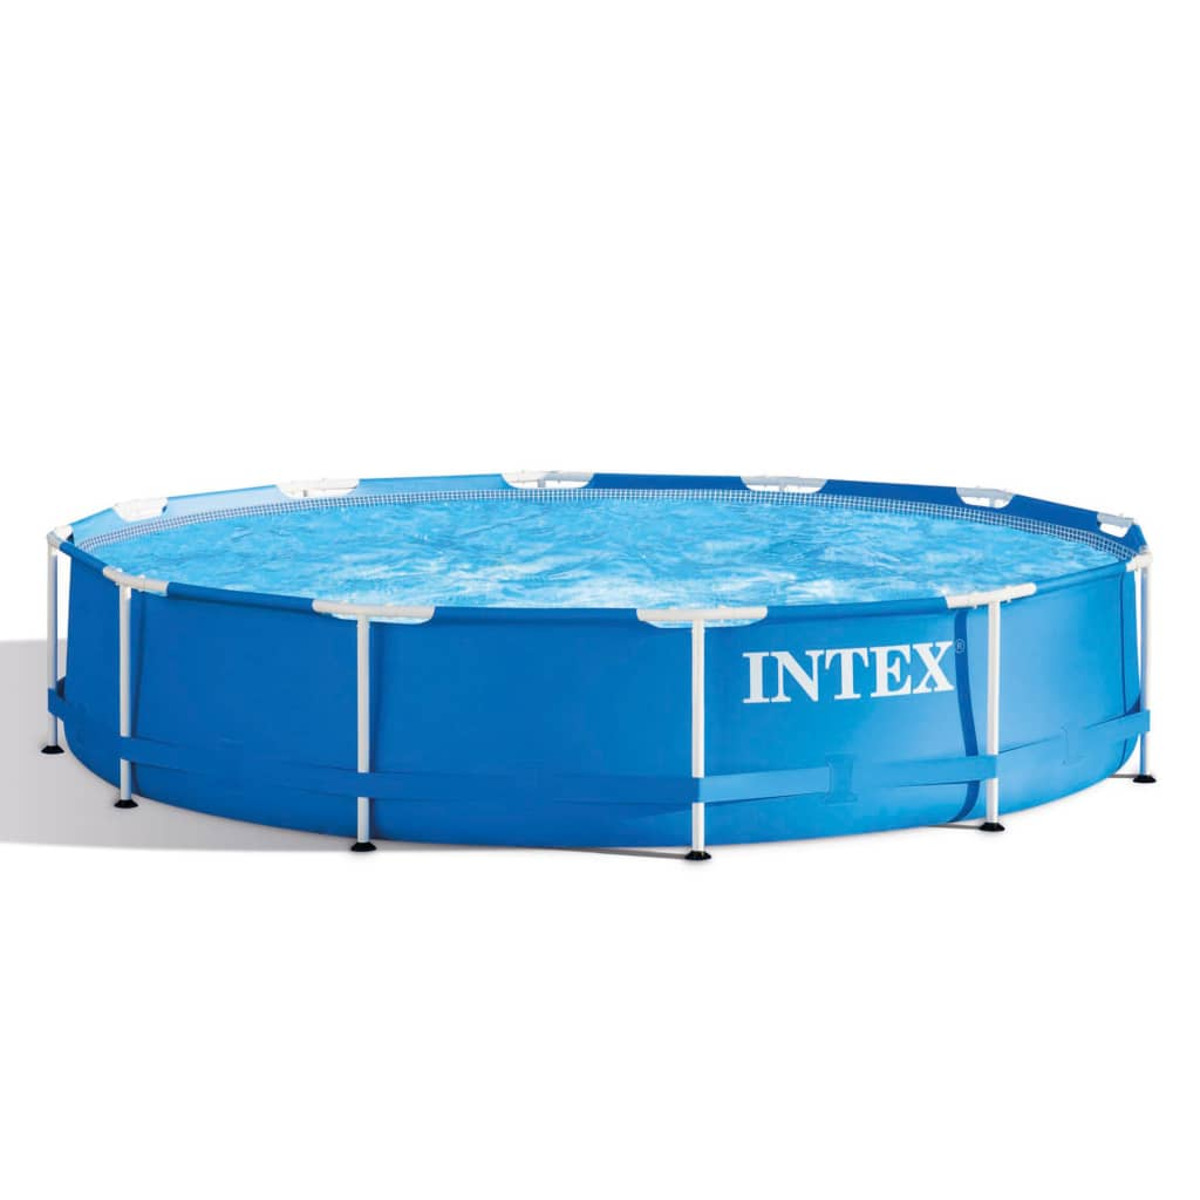 INTEX Blau 3202756 Pool,